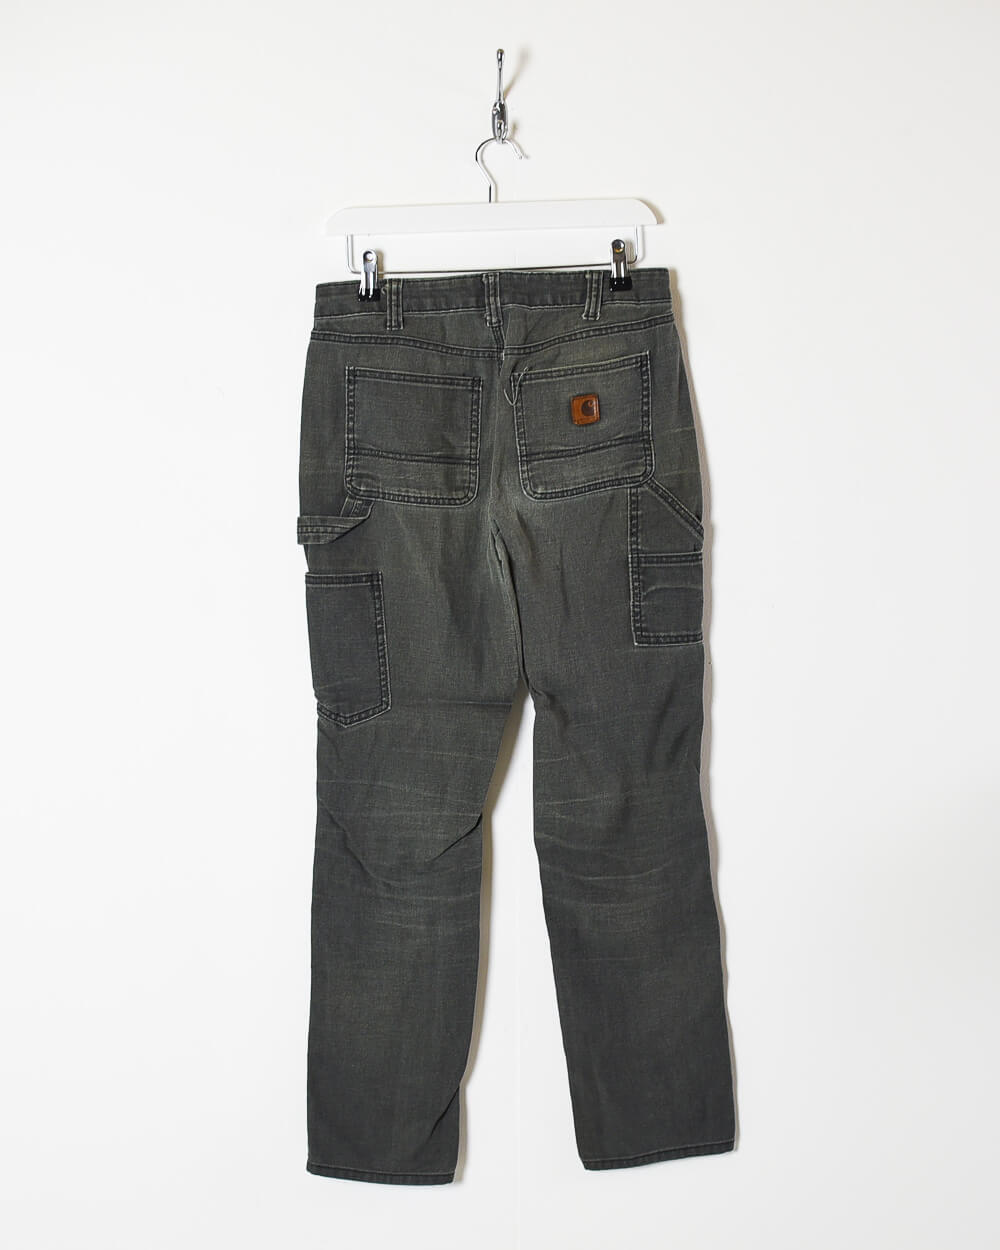 Grey Carhartt Heavyweight Double Knee Jeans - W30 L30